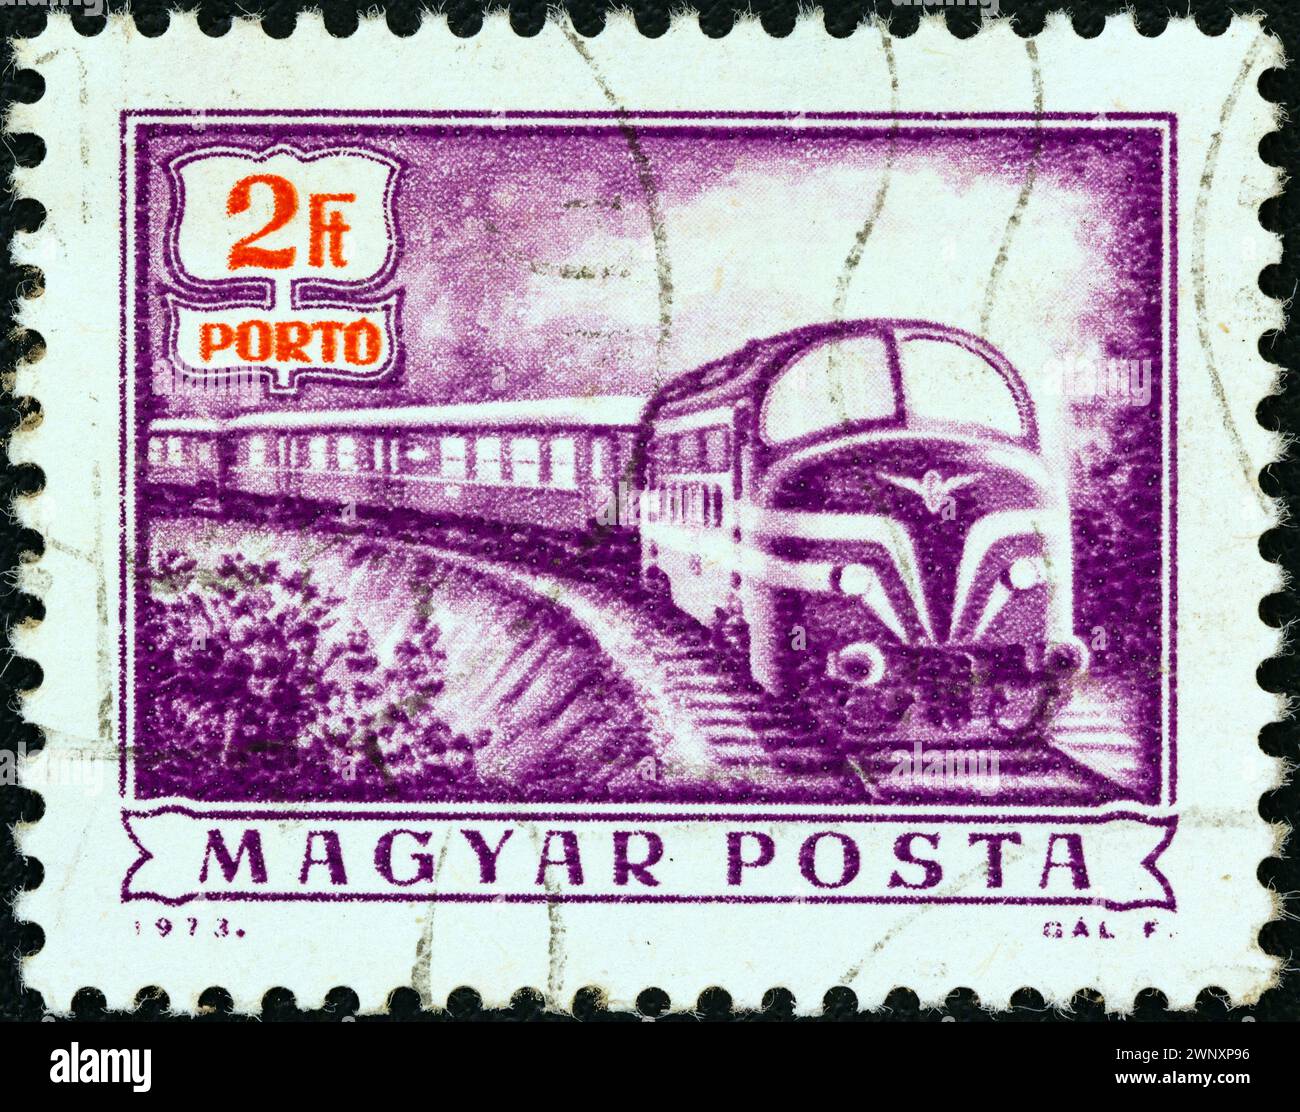 UNGHERIA - 1973 CIRCA: Un francobollo stampato in Ungheria dal numero "Postal Operations" mostra un treno postale diesel, circa 1973. Foto Stock